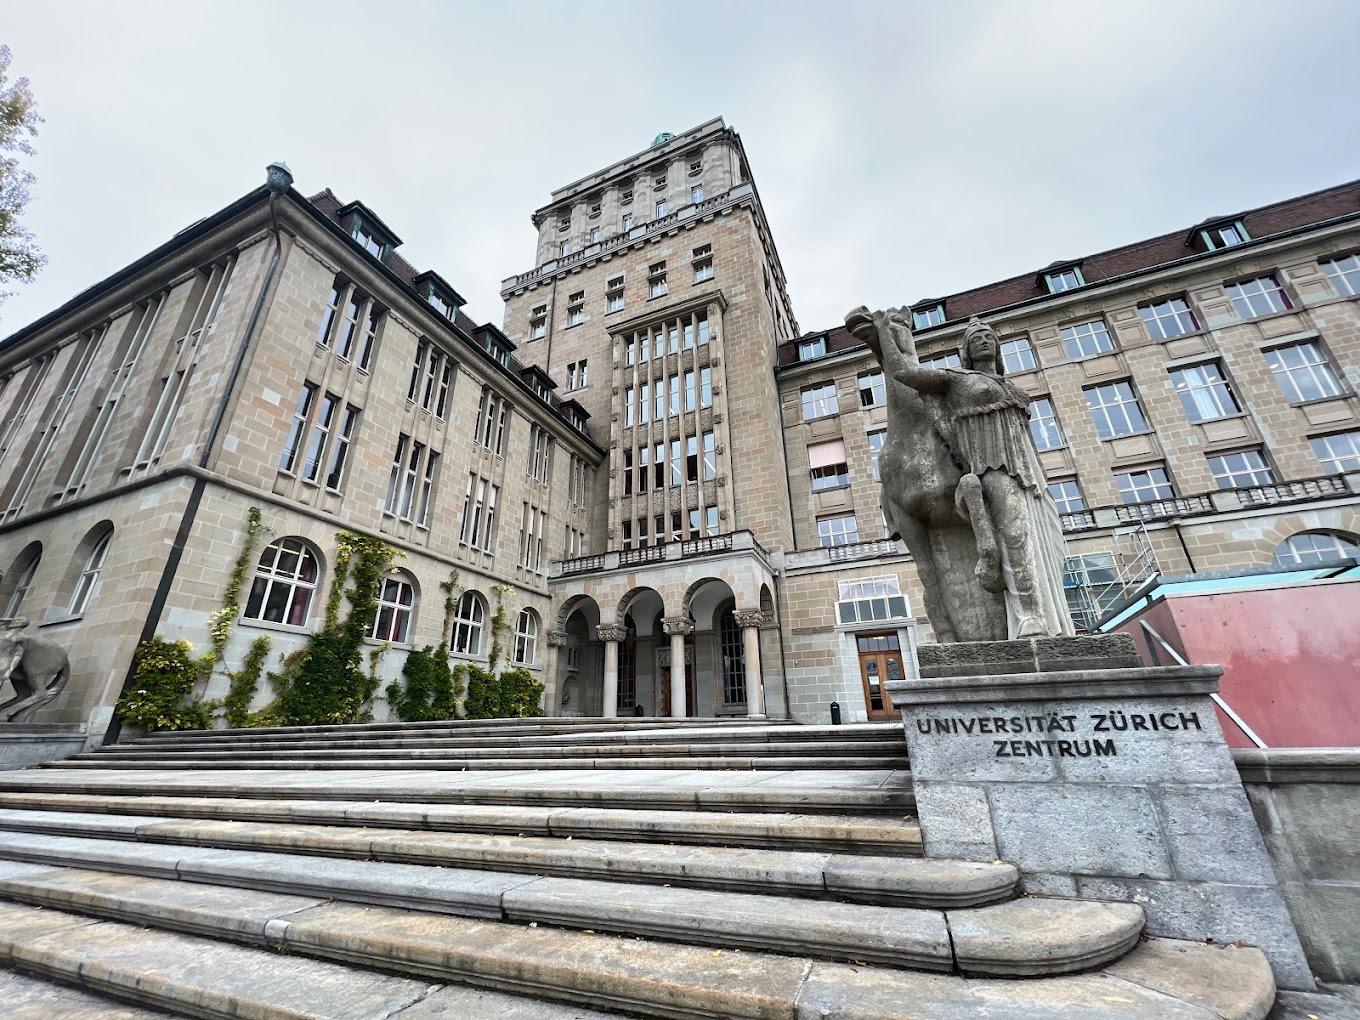 Цюрихский университет первым открыл доступ к высшему образованию женщинам